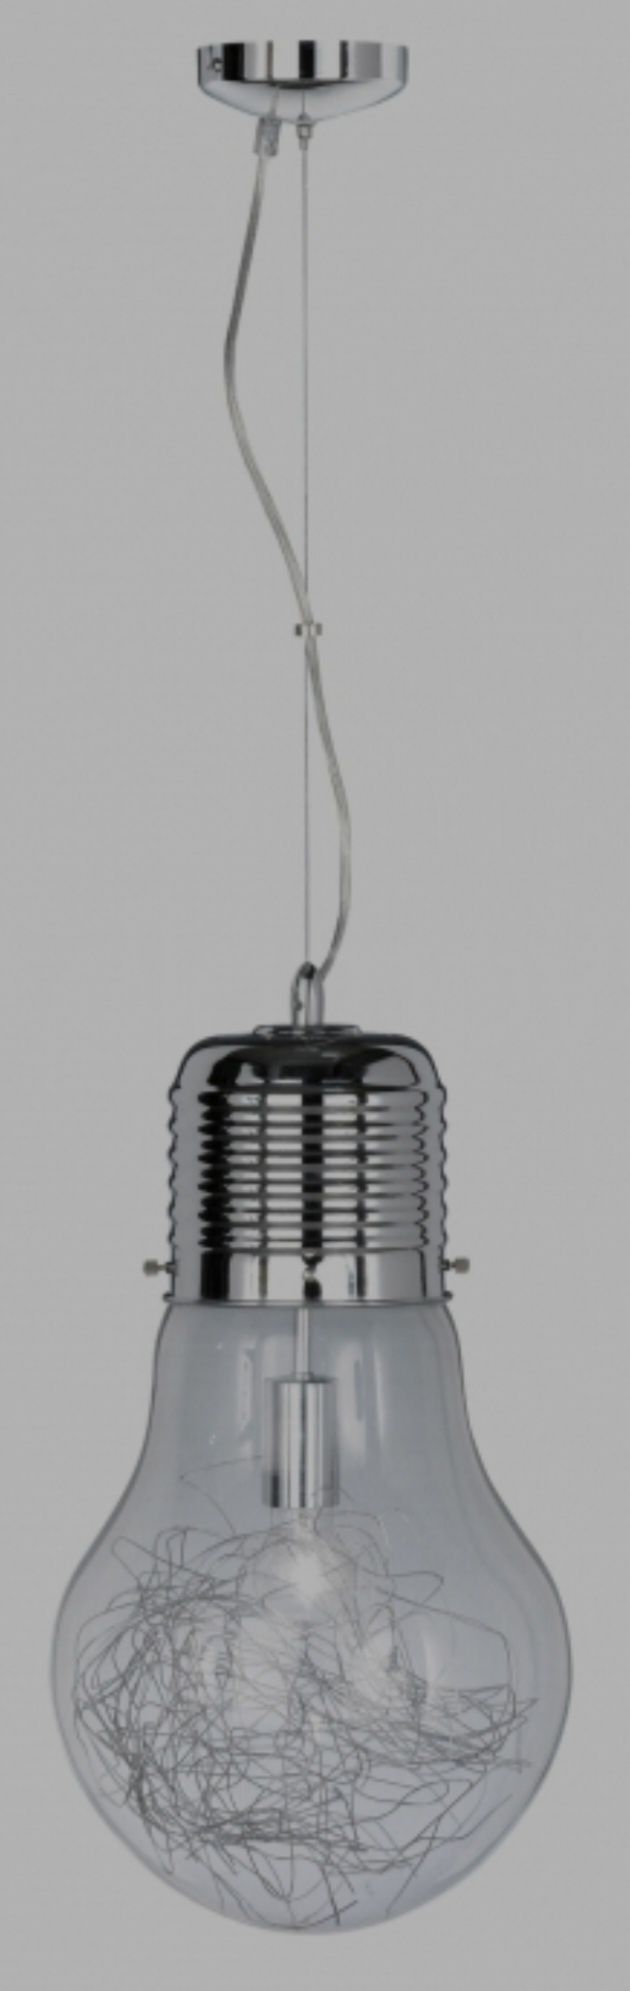 Lampa sufitowa firmy Wofi